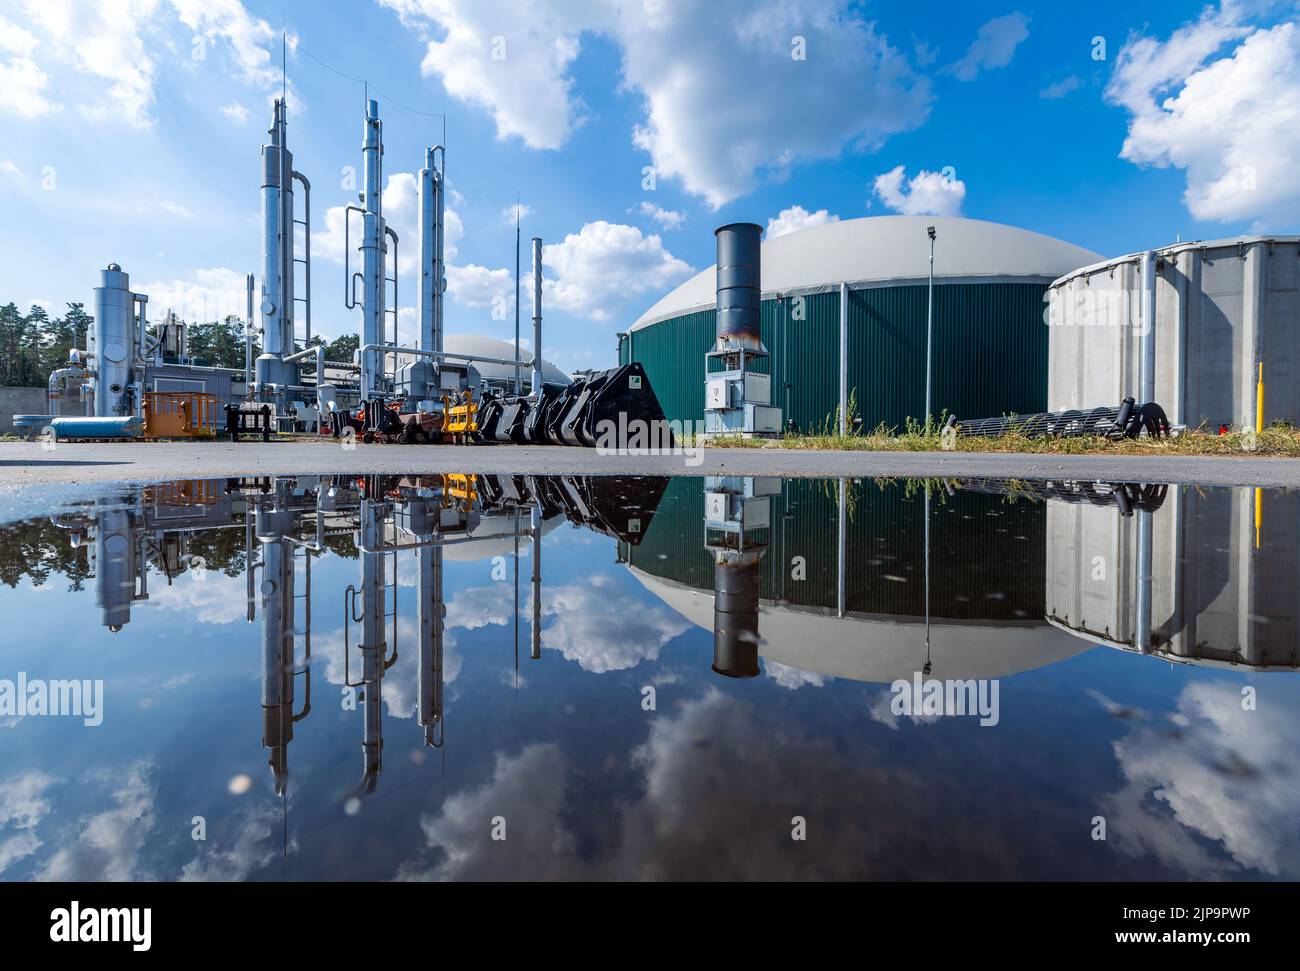 Torgelow, Alemania. 16th de Ago de 2022. La planta de biogás de Torgelow se refleja en un charco. La planta abastece a 15.000 habitantes de la ciudad de Torgelow. La planta, que anteriormente consistía en seis tanques de almacenamiento de gas operados por la empresa Mele Biogas, se ampliará para duplicar su capacidad hacia el otoño del 2023. Según la Asociación Estatal de Mecklemburgo-Pomerania Occidental para la Energía Renovable, aquí se producirá un volumen de energía de más de 100 millones de kilovatios hora al año, que también se introducirá en la red de gas natural. Crédito: Jens Büttner/dpa/Alamy Live News Foto de stock